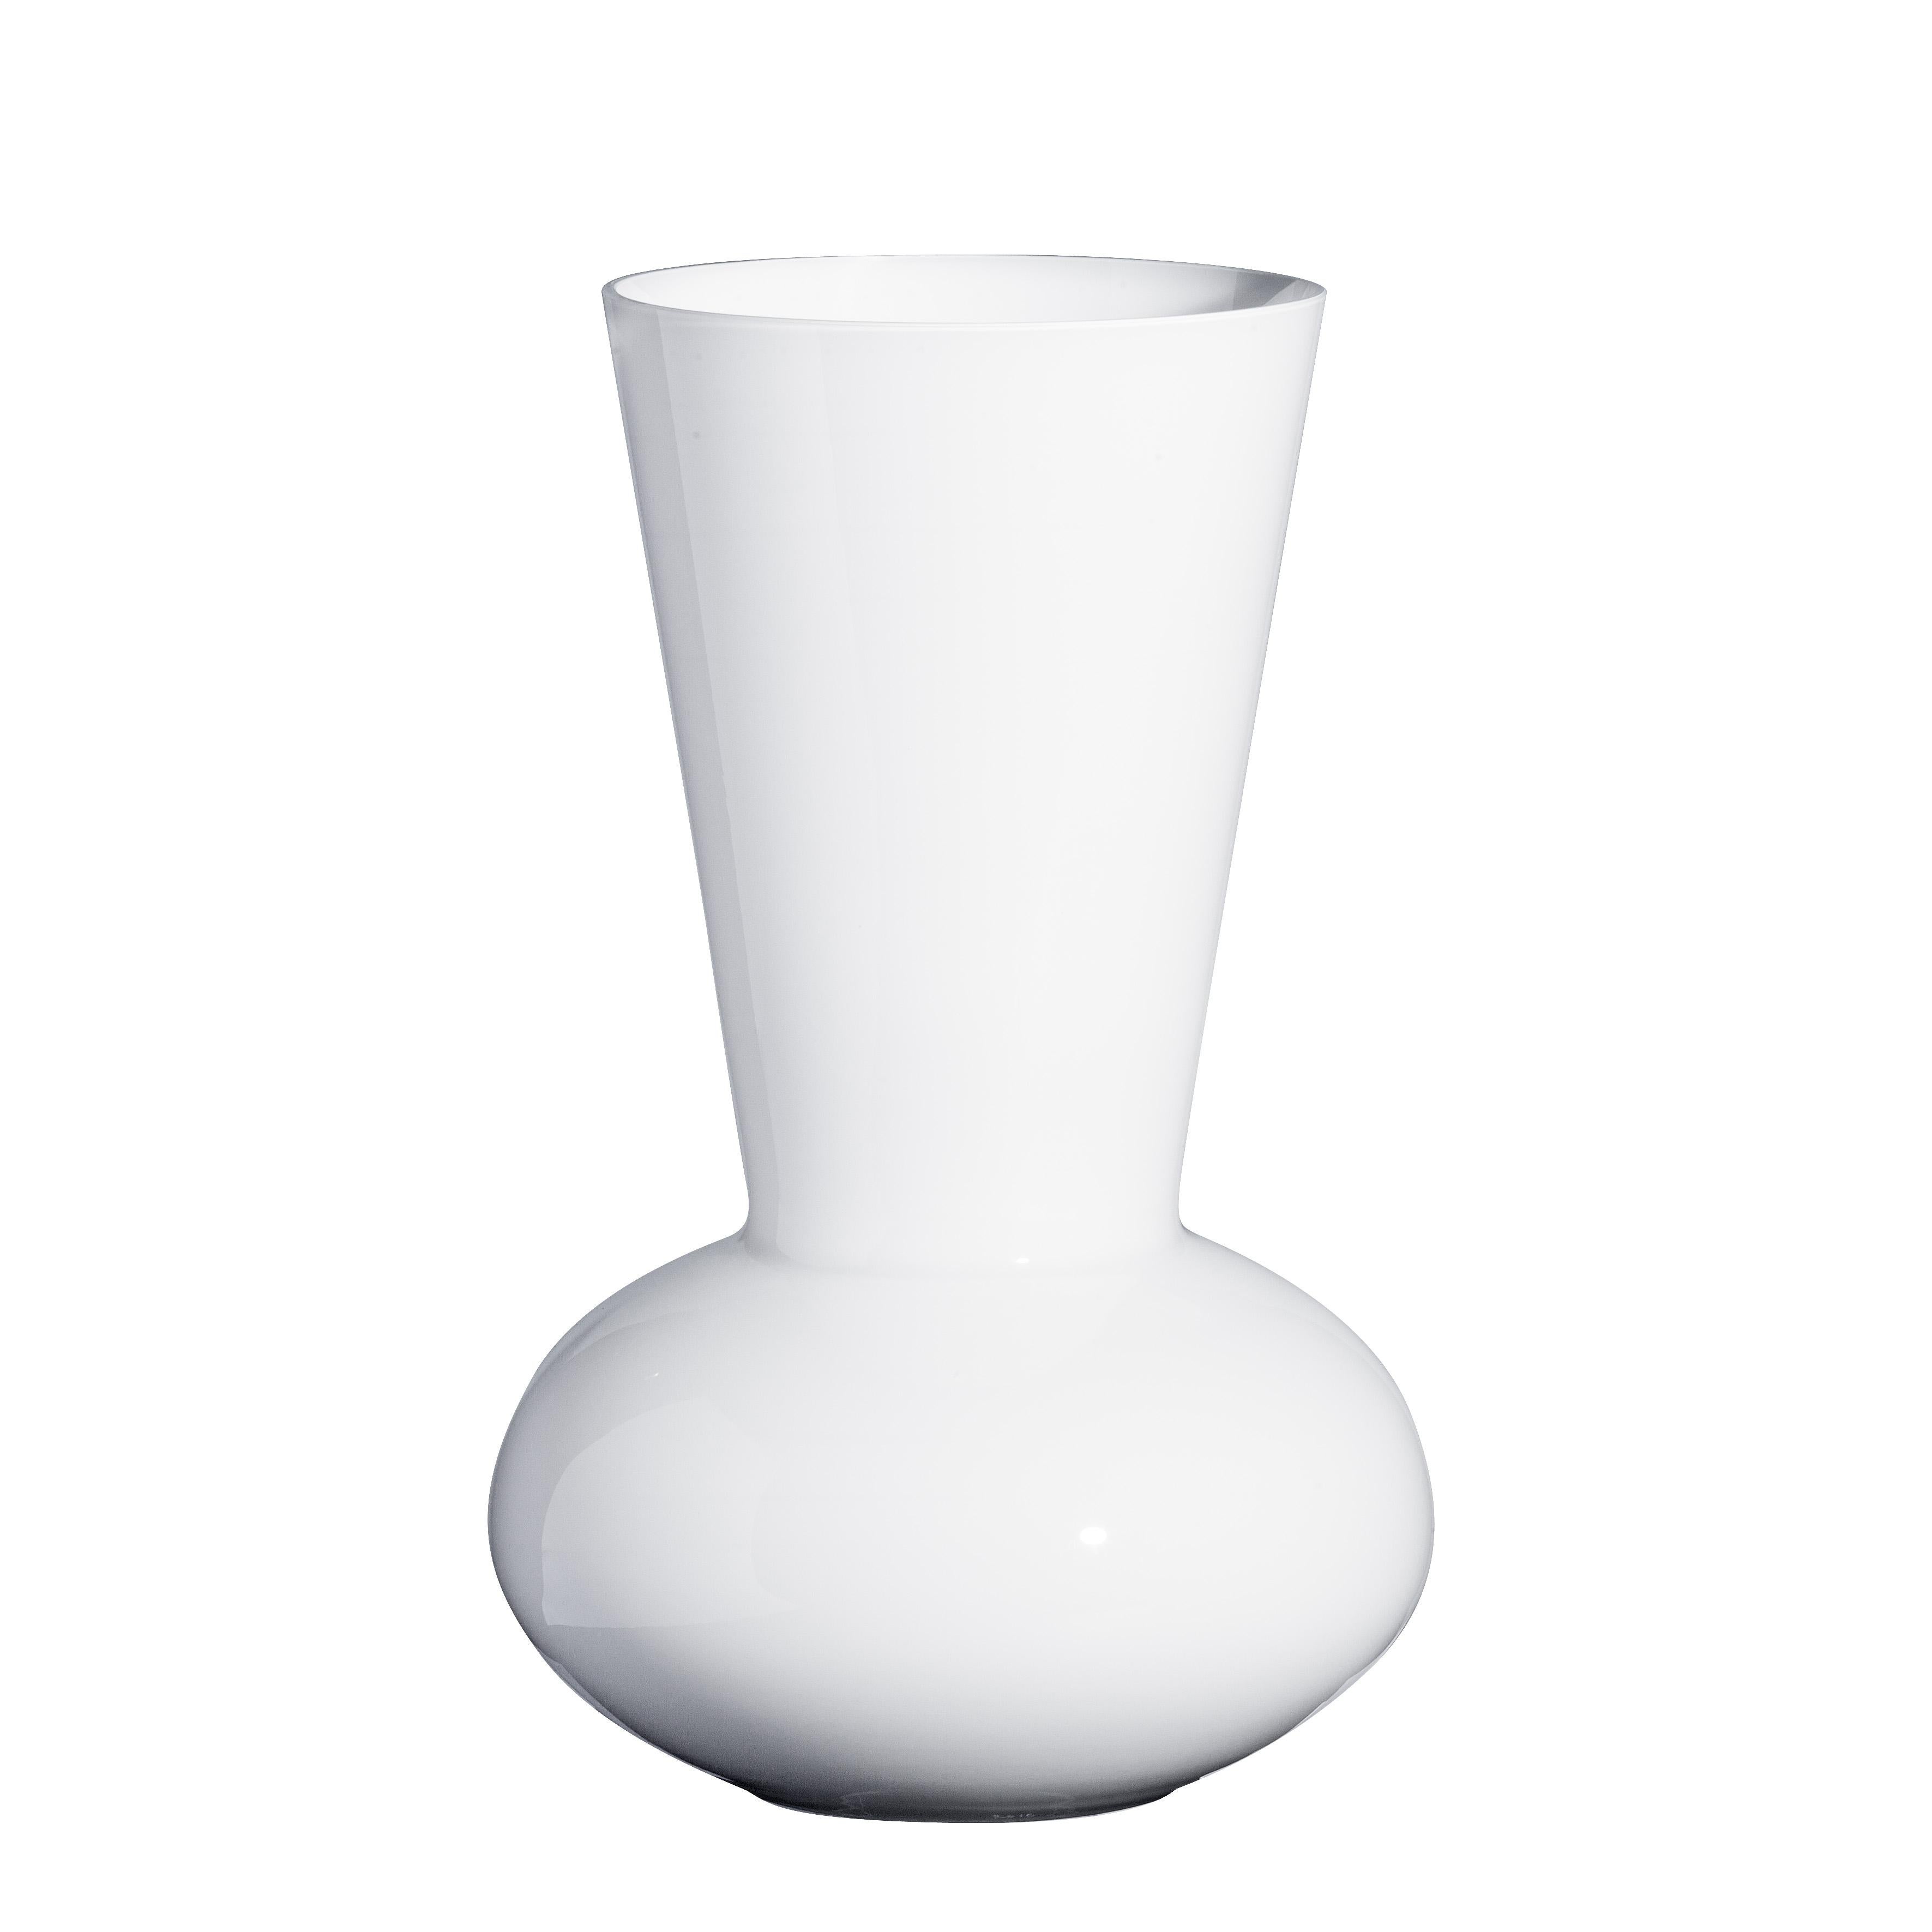 Medium Troncosfera Vase in White by Carlo Moretti For Sale